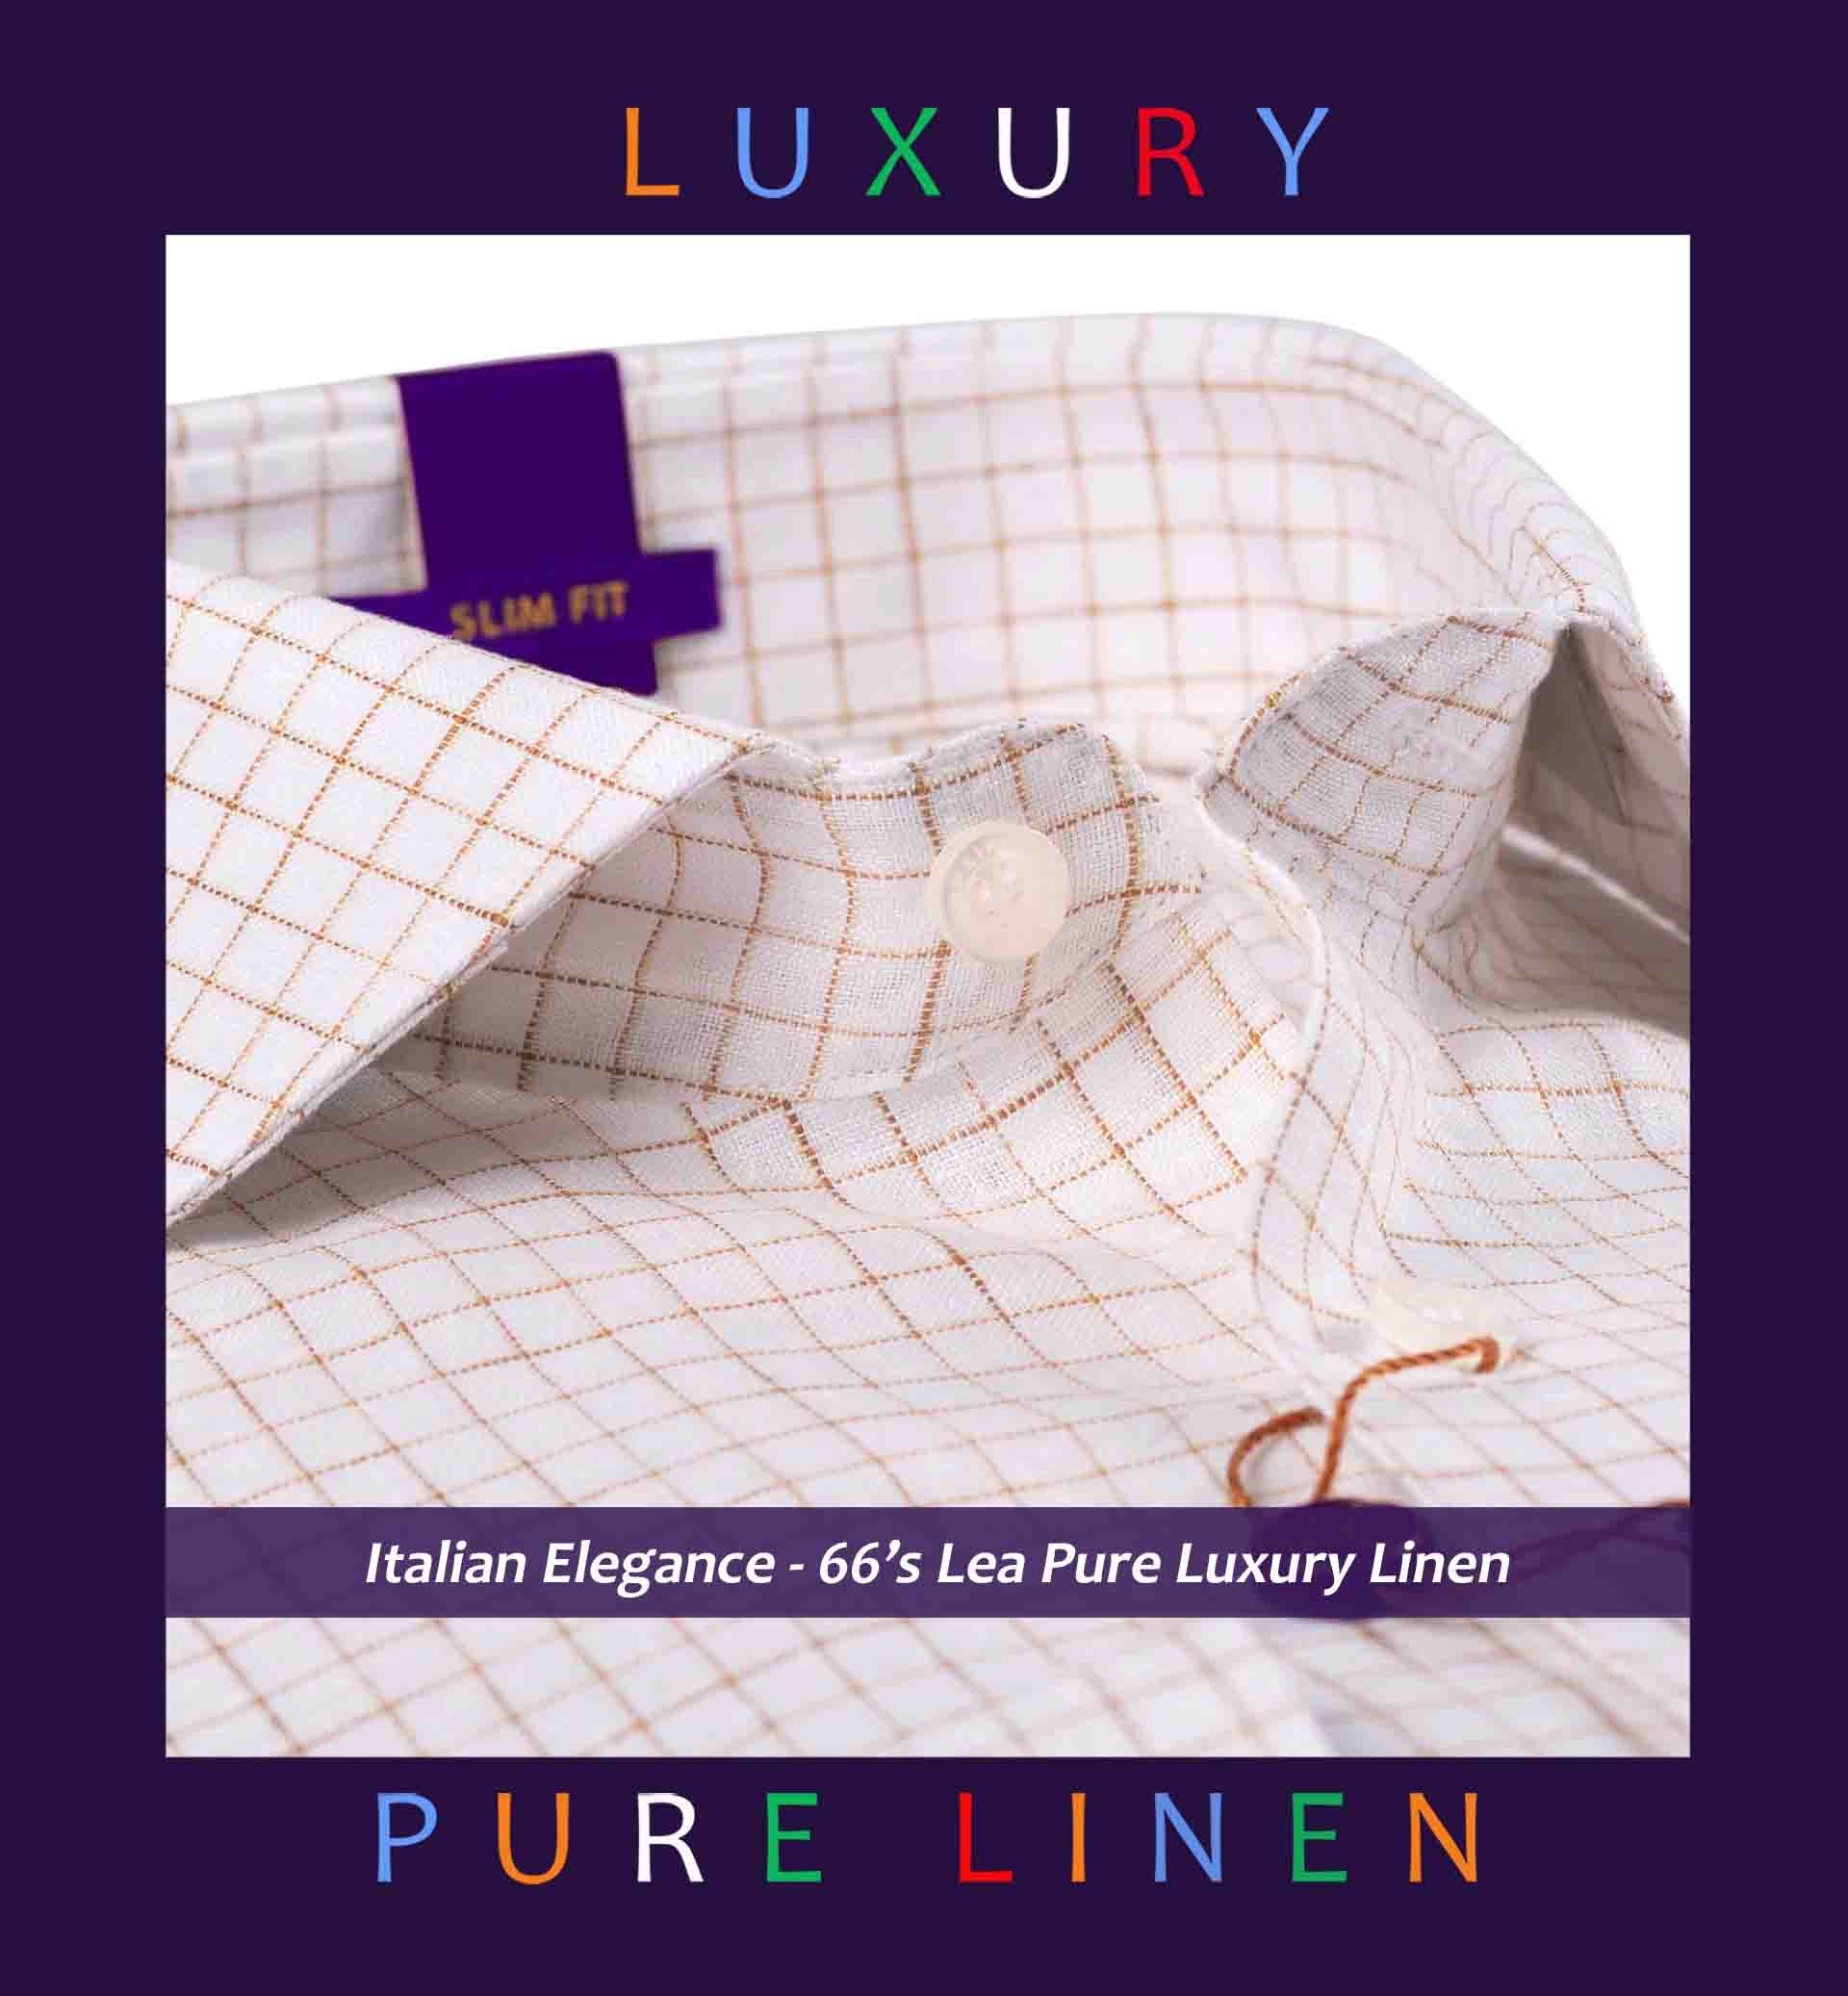 Ripon- British Tan & White Magical Check- 66's Lea Pure Luxury Linen